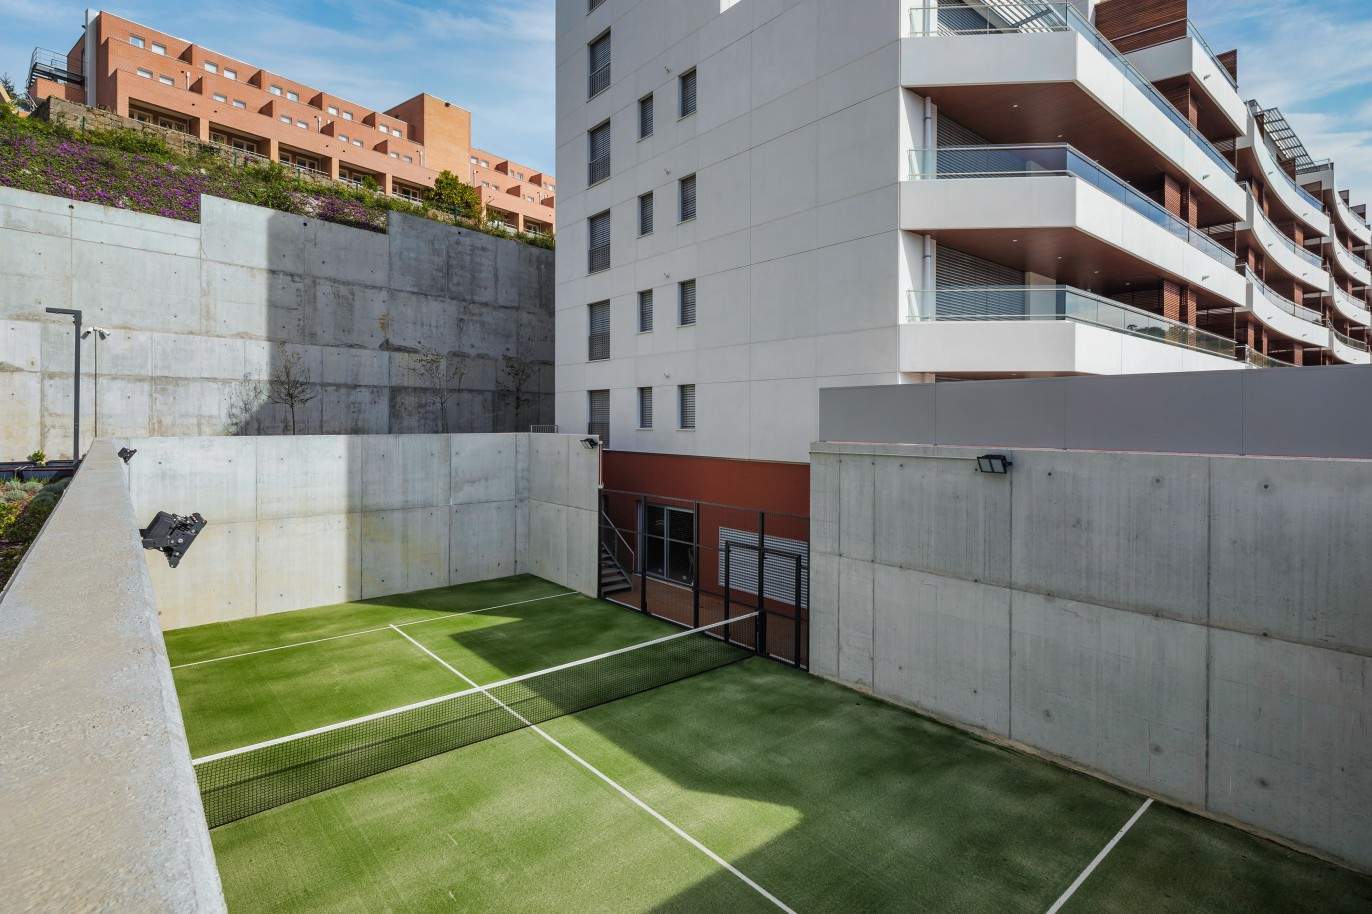 Penthouse nueva de 3 dormitorios con piscina y vistas del Palacio de Cristal, Oporto, Portugal_211777